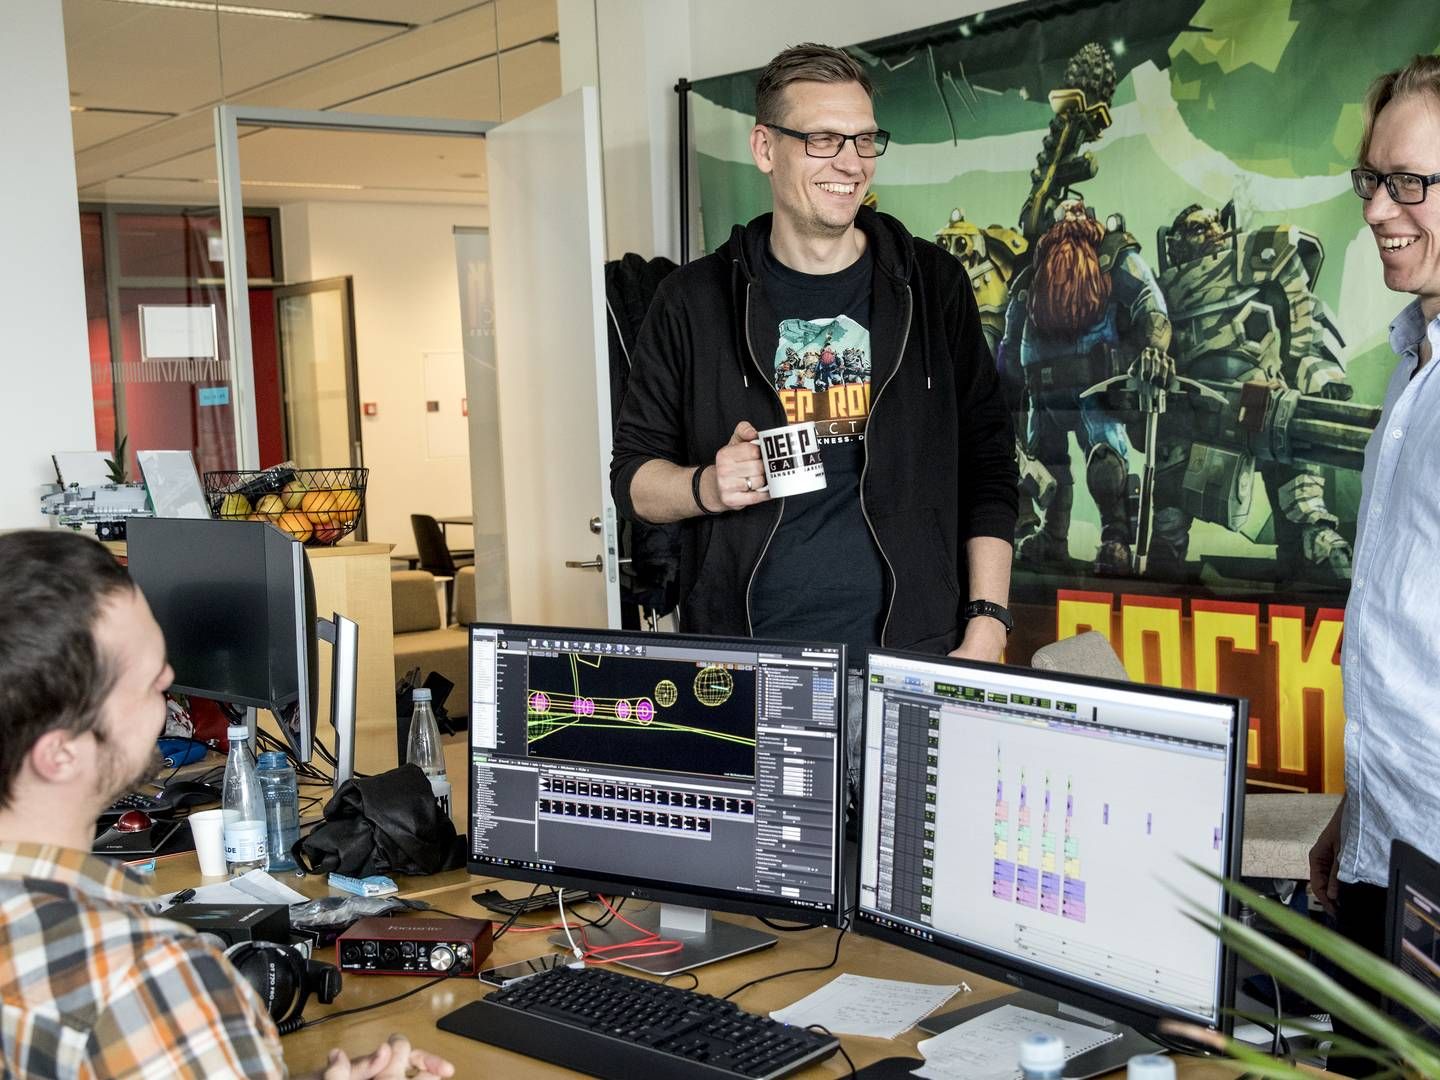 Ligesom mange andre danske spilfirmaer blev Ghost Ship Games født gennem en investering fra det nu lukkede Capnova. Der er stadig ikke kommet et godt alternativ, tre år efter lukningen, lyder vurderingen fra direktør Søren Lundgaard (th.). | Foto: Stine Bidstrup / Ritzau Scanpix